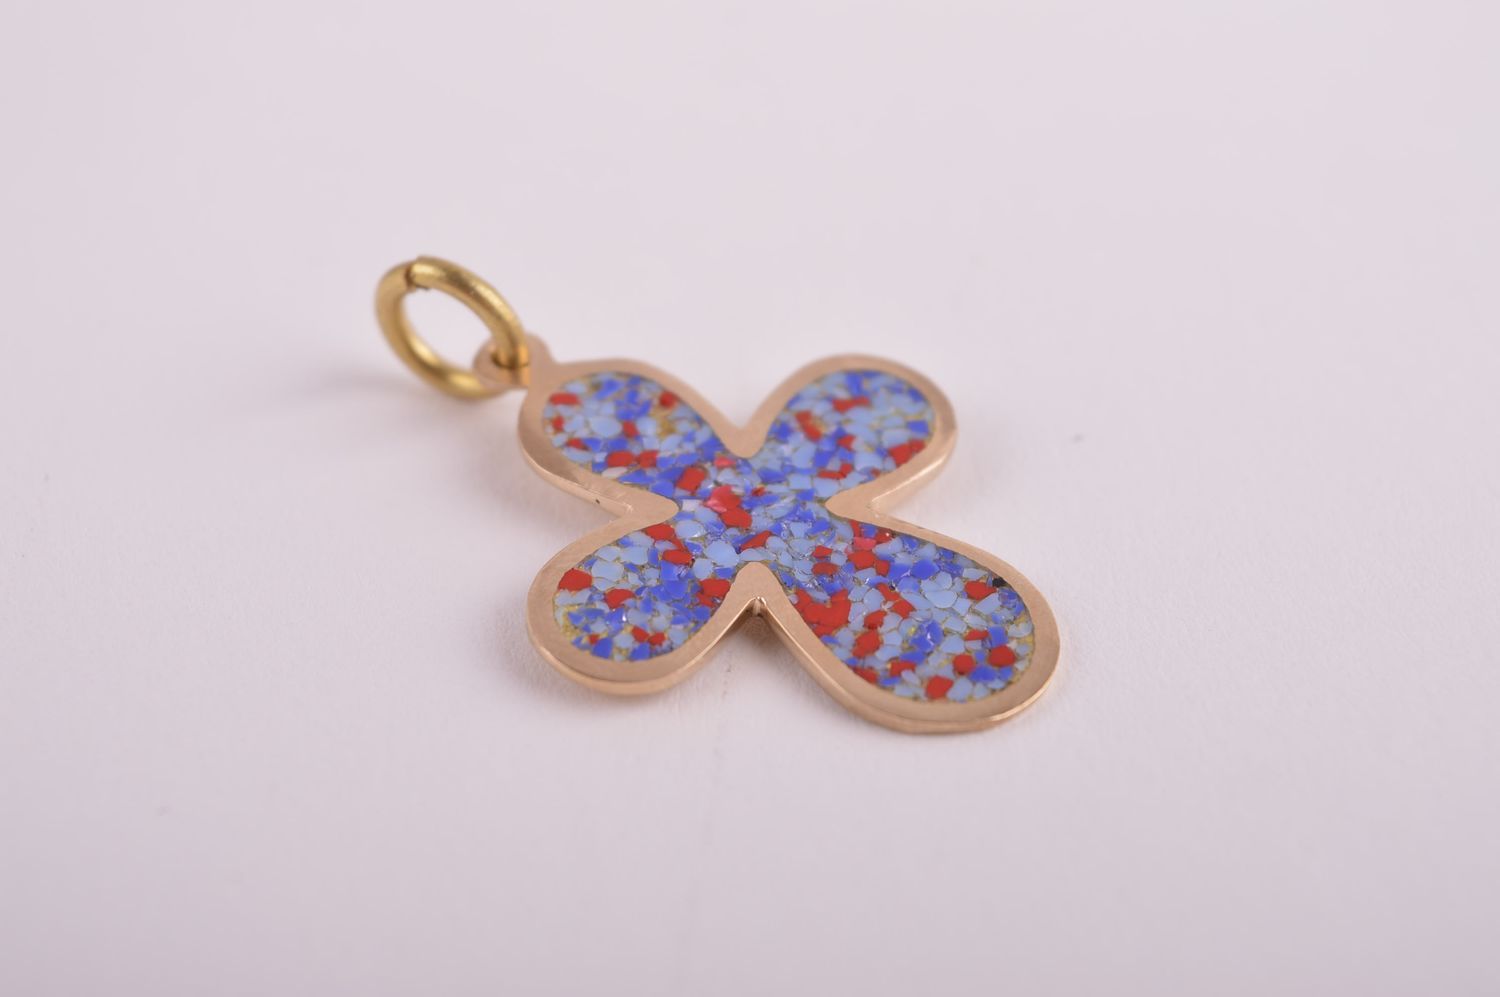 Крестик с камнями handmade подвеска на шею украшение из латуни и самоцветов фото 4